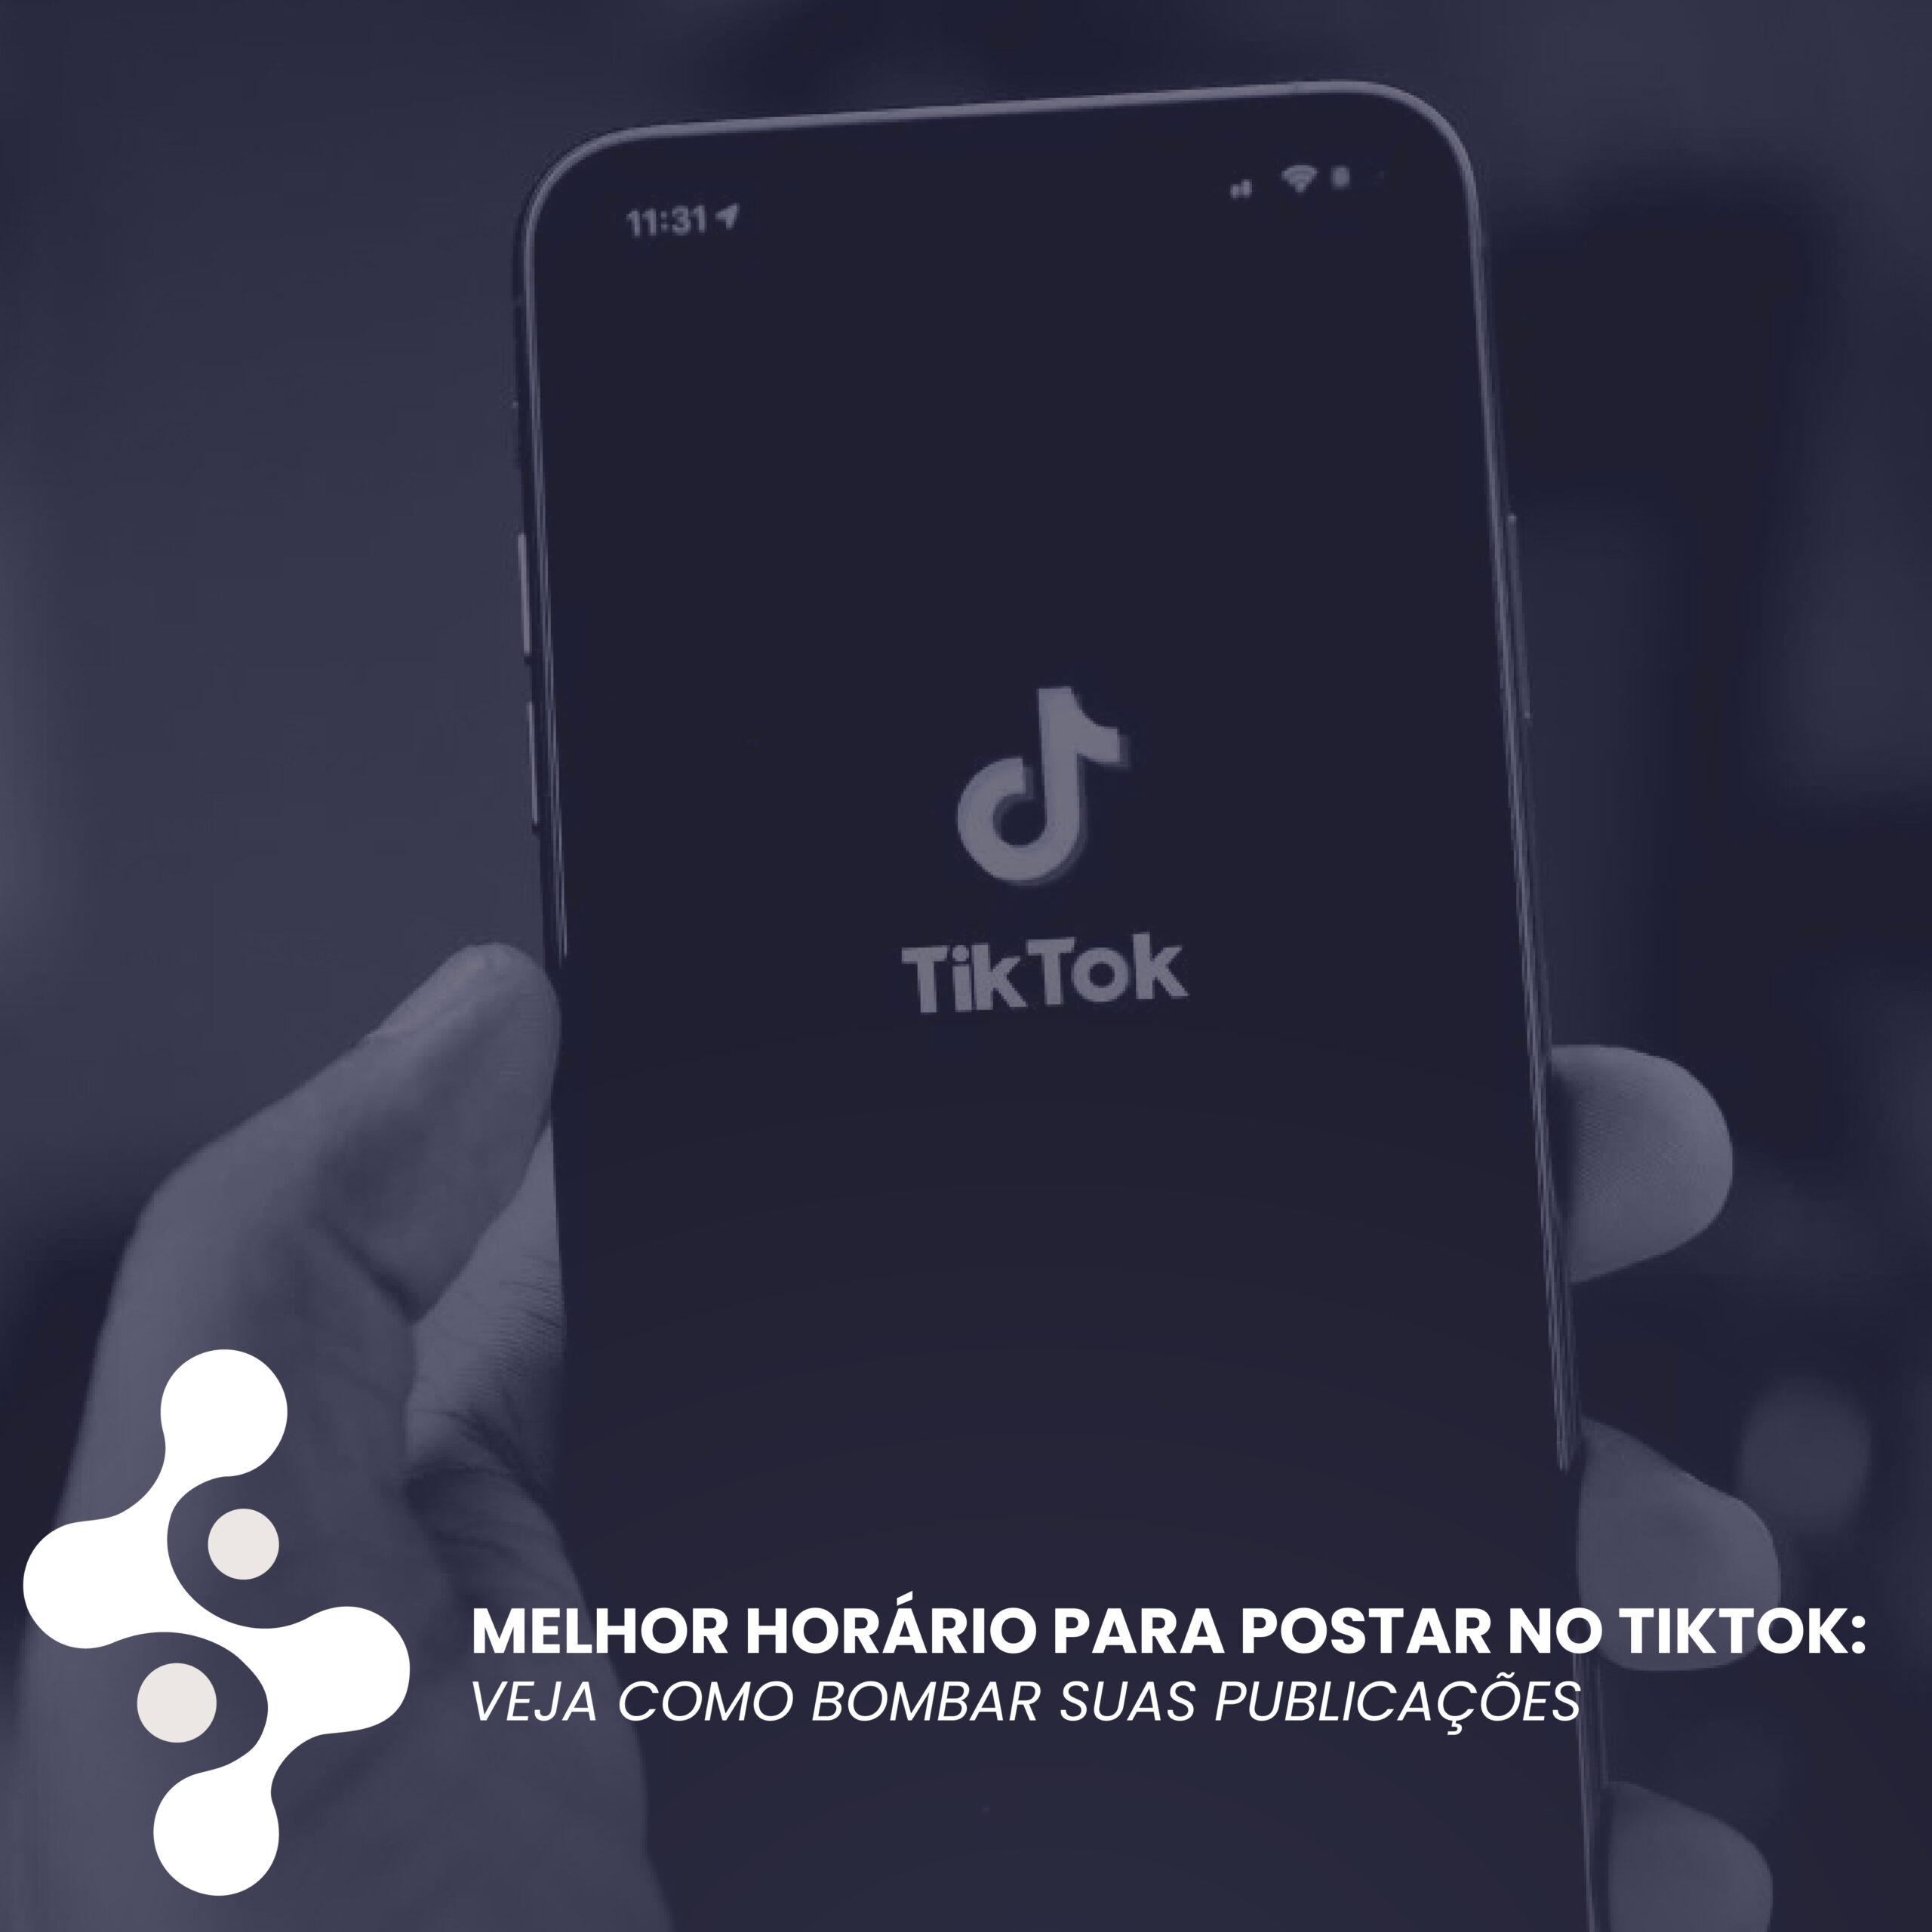 Melhor horário para postar no TikTok: Veja como bombar suas publicações